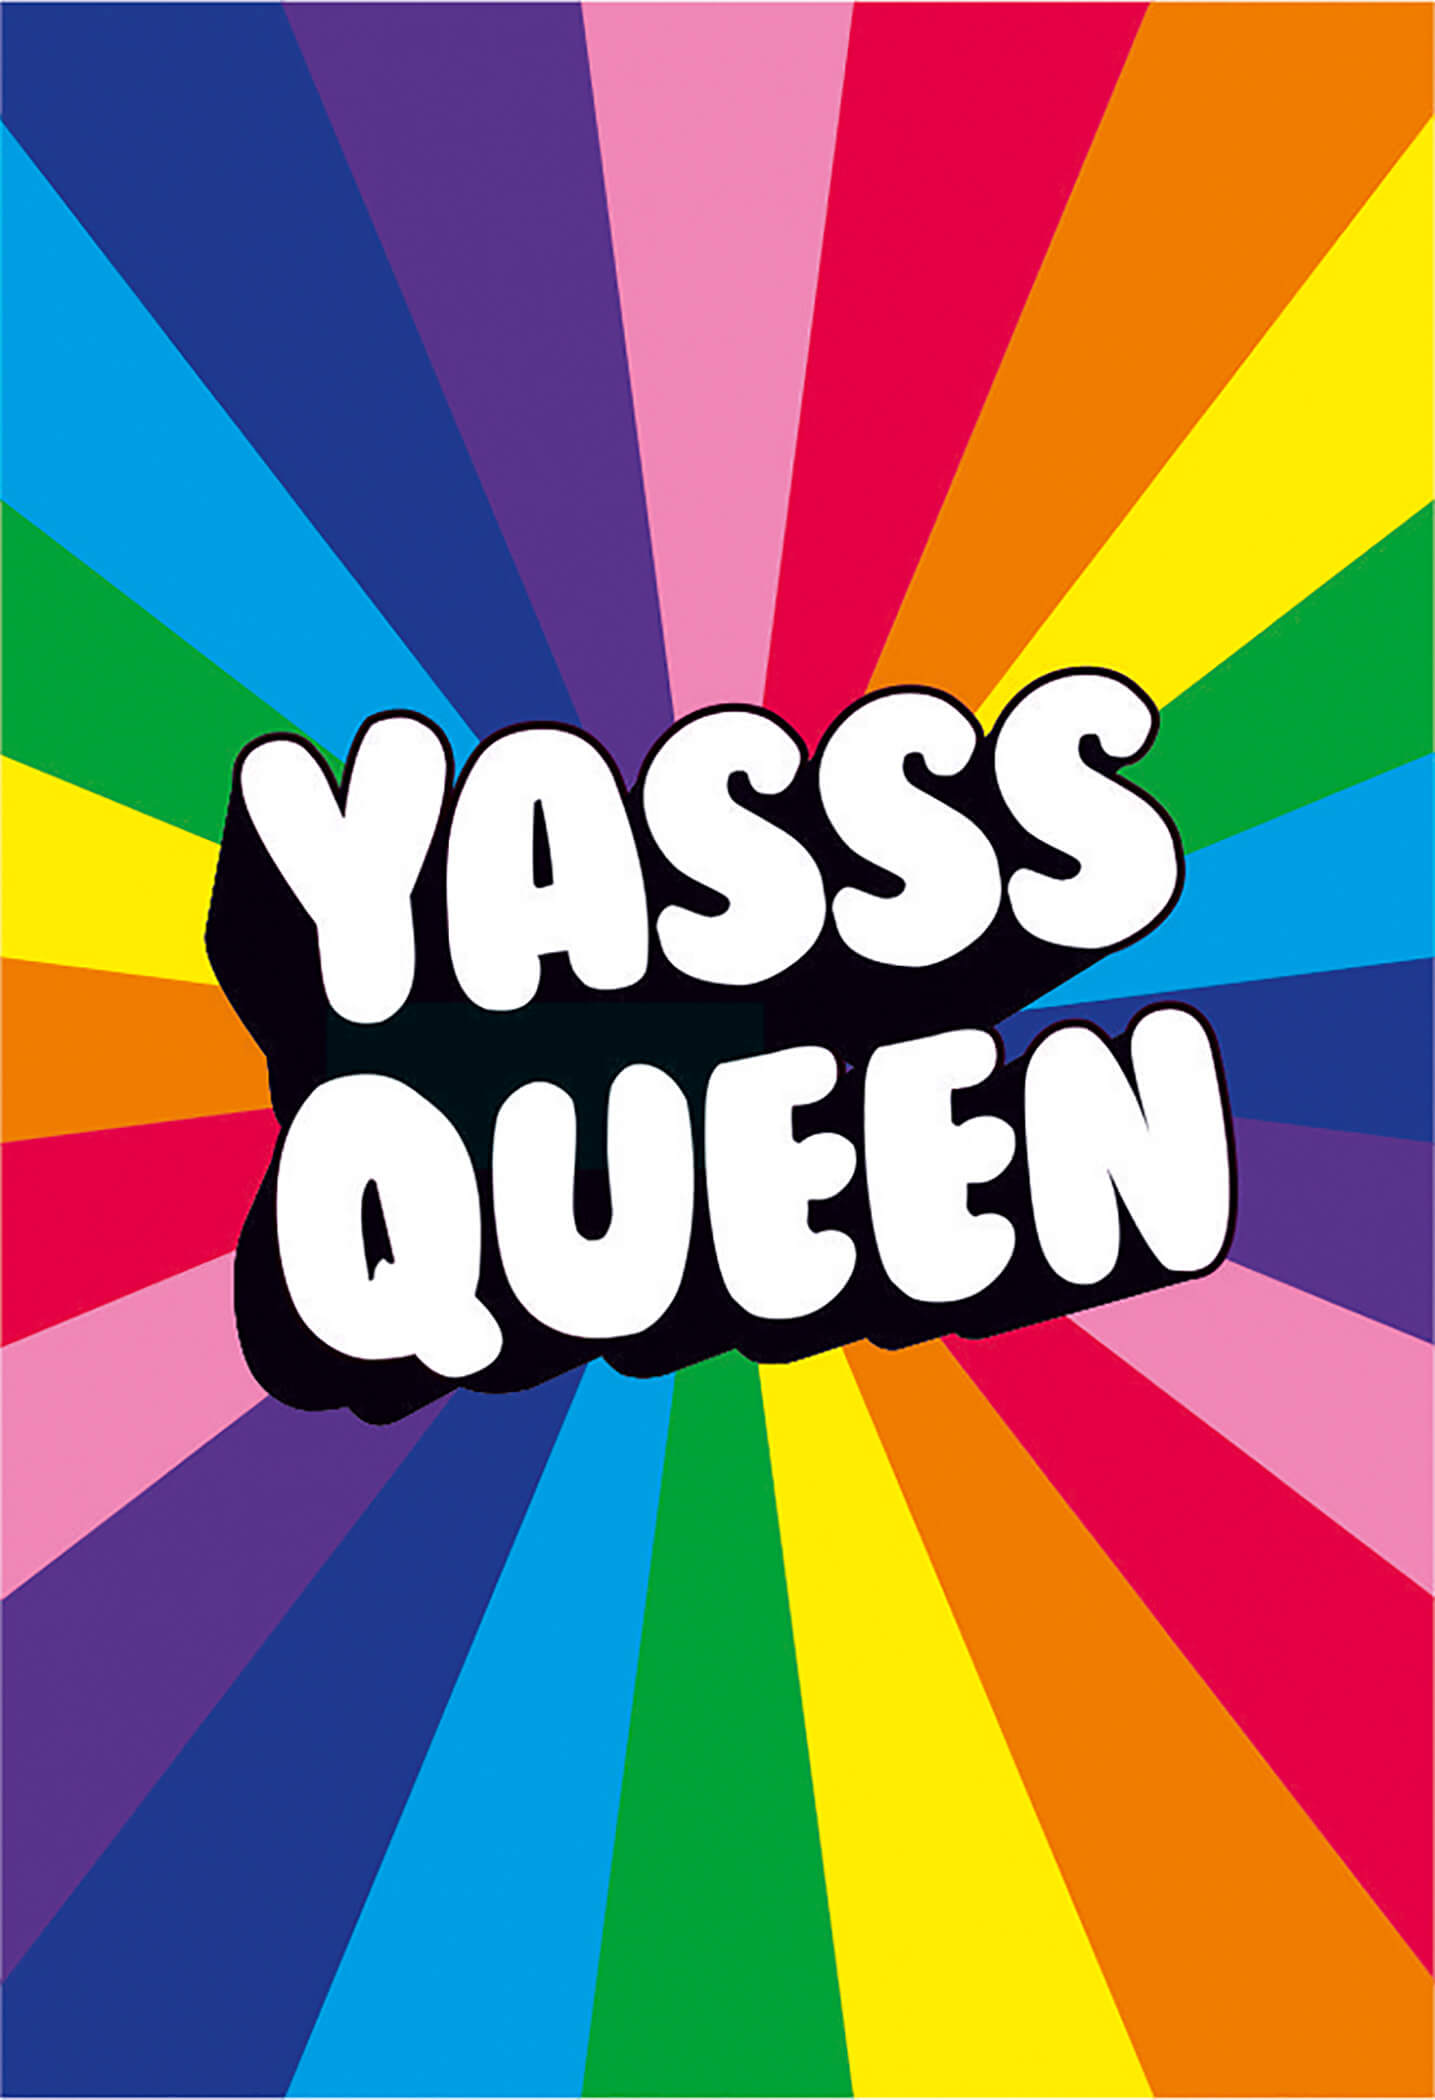 Yasss Queen - Magnet 5,5x8 cm Dean Morris Cards 